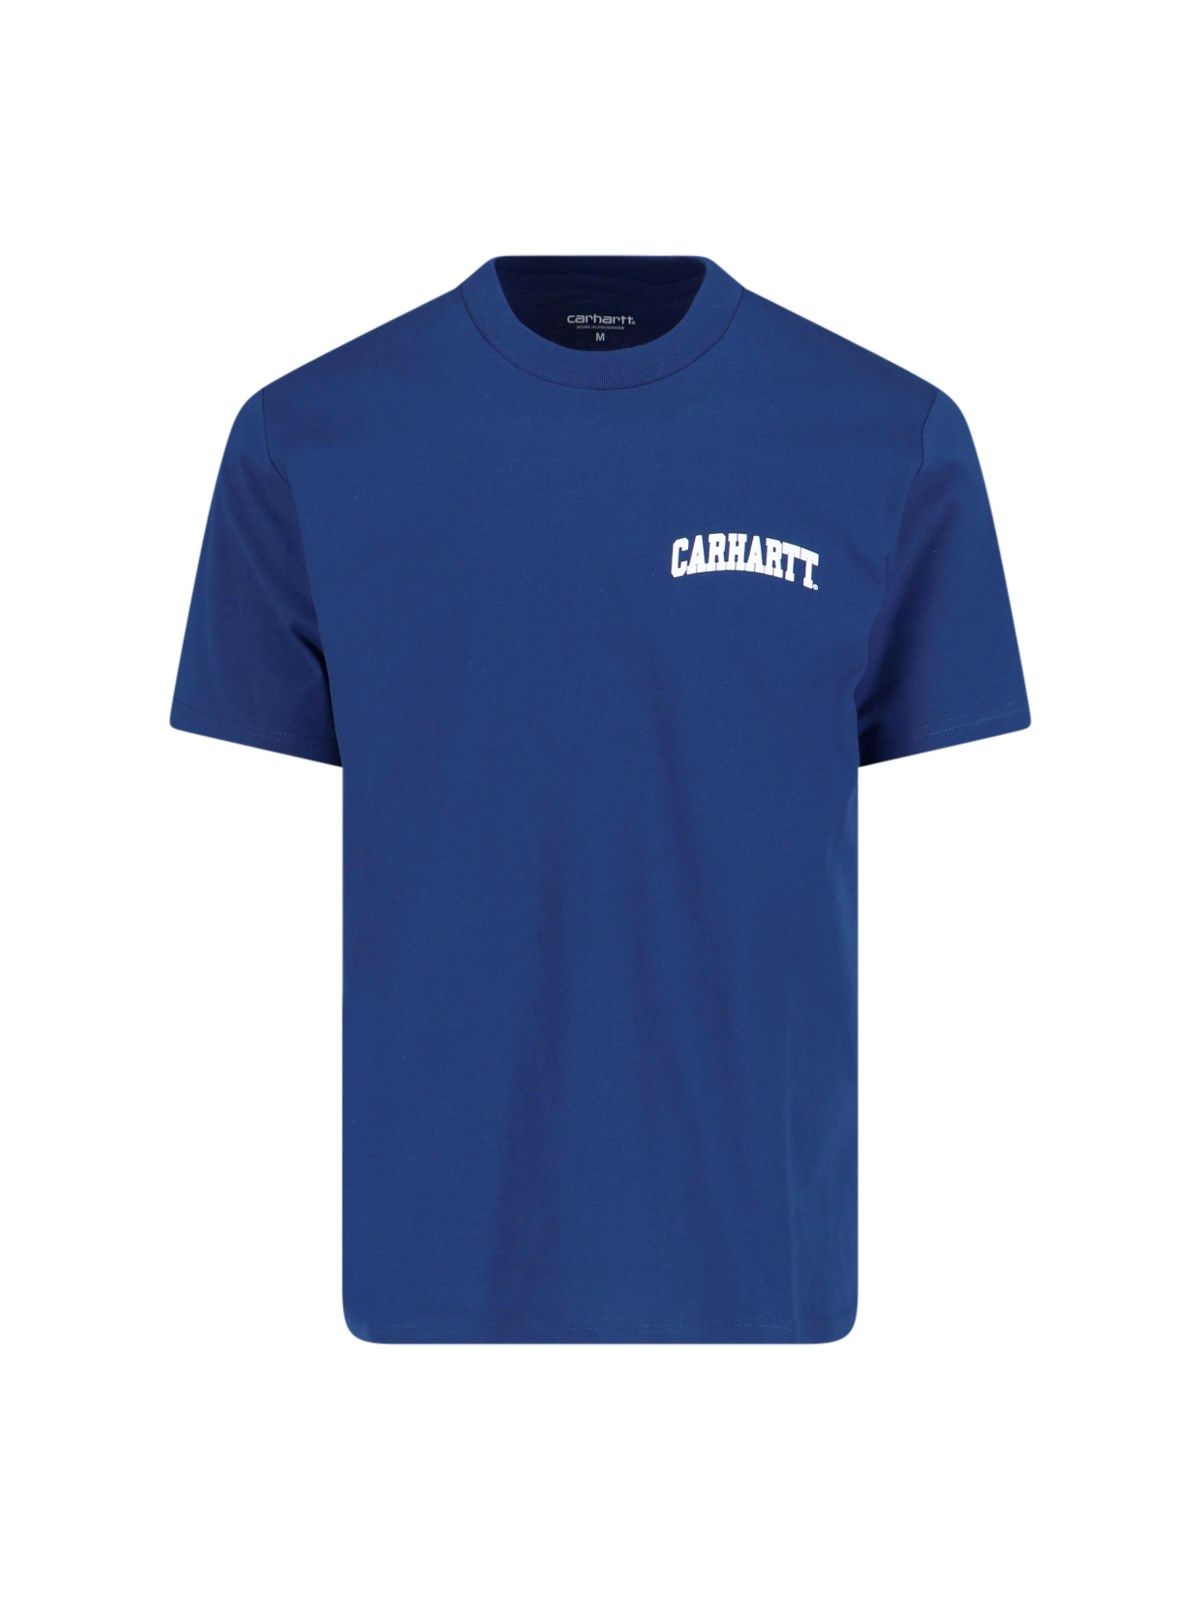 Carhartt I02899122txx In Blue